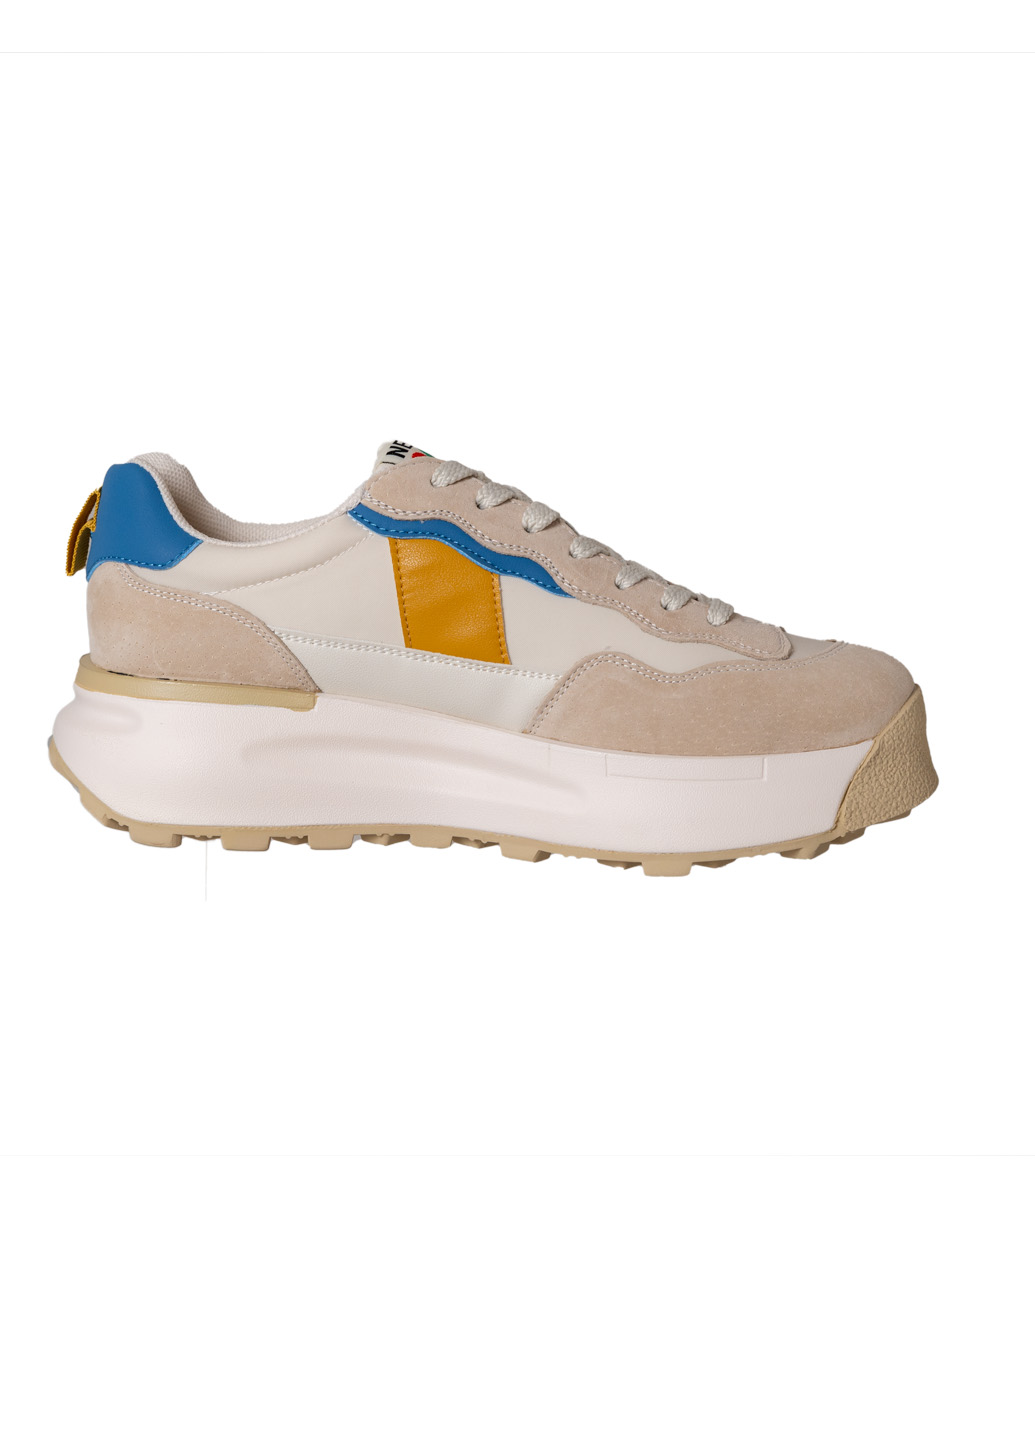 Жіночі кросівки Lifexpert біло-бежевого кольору з блакитно-жовтими вставками